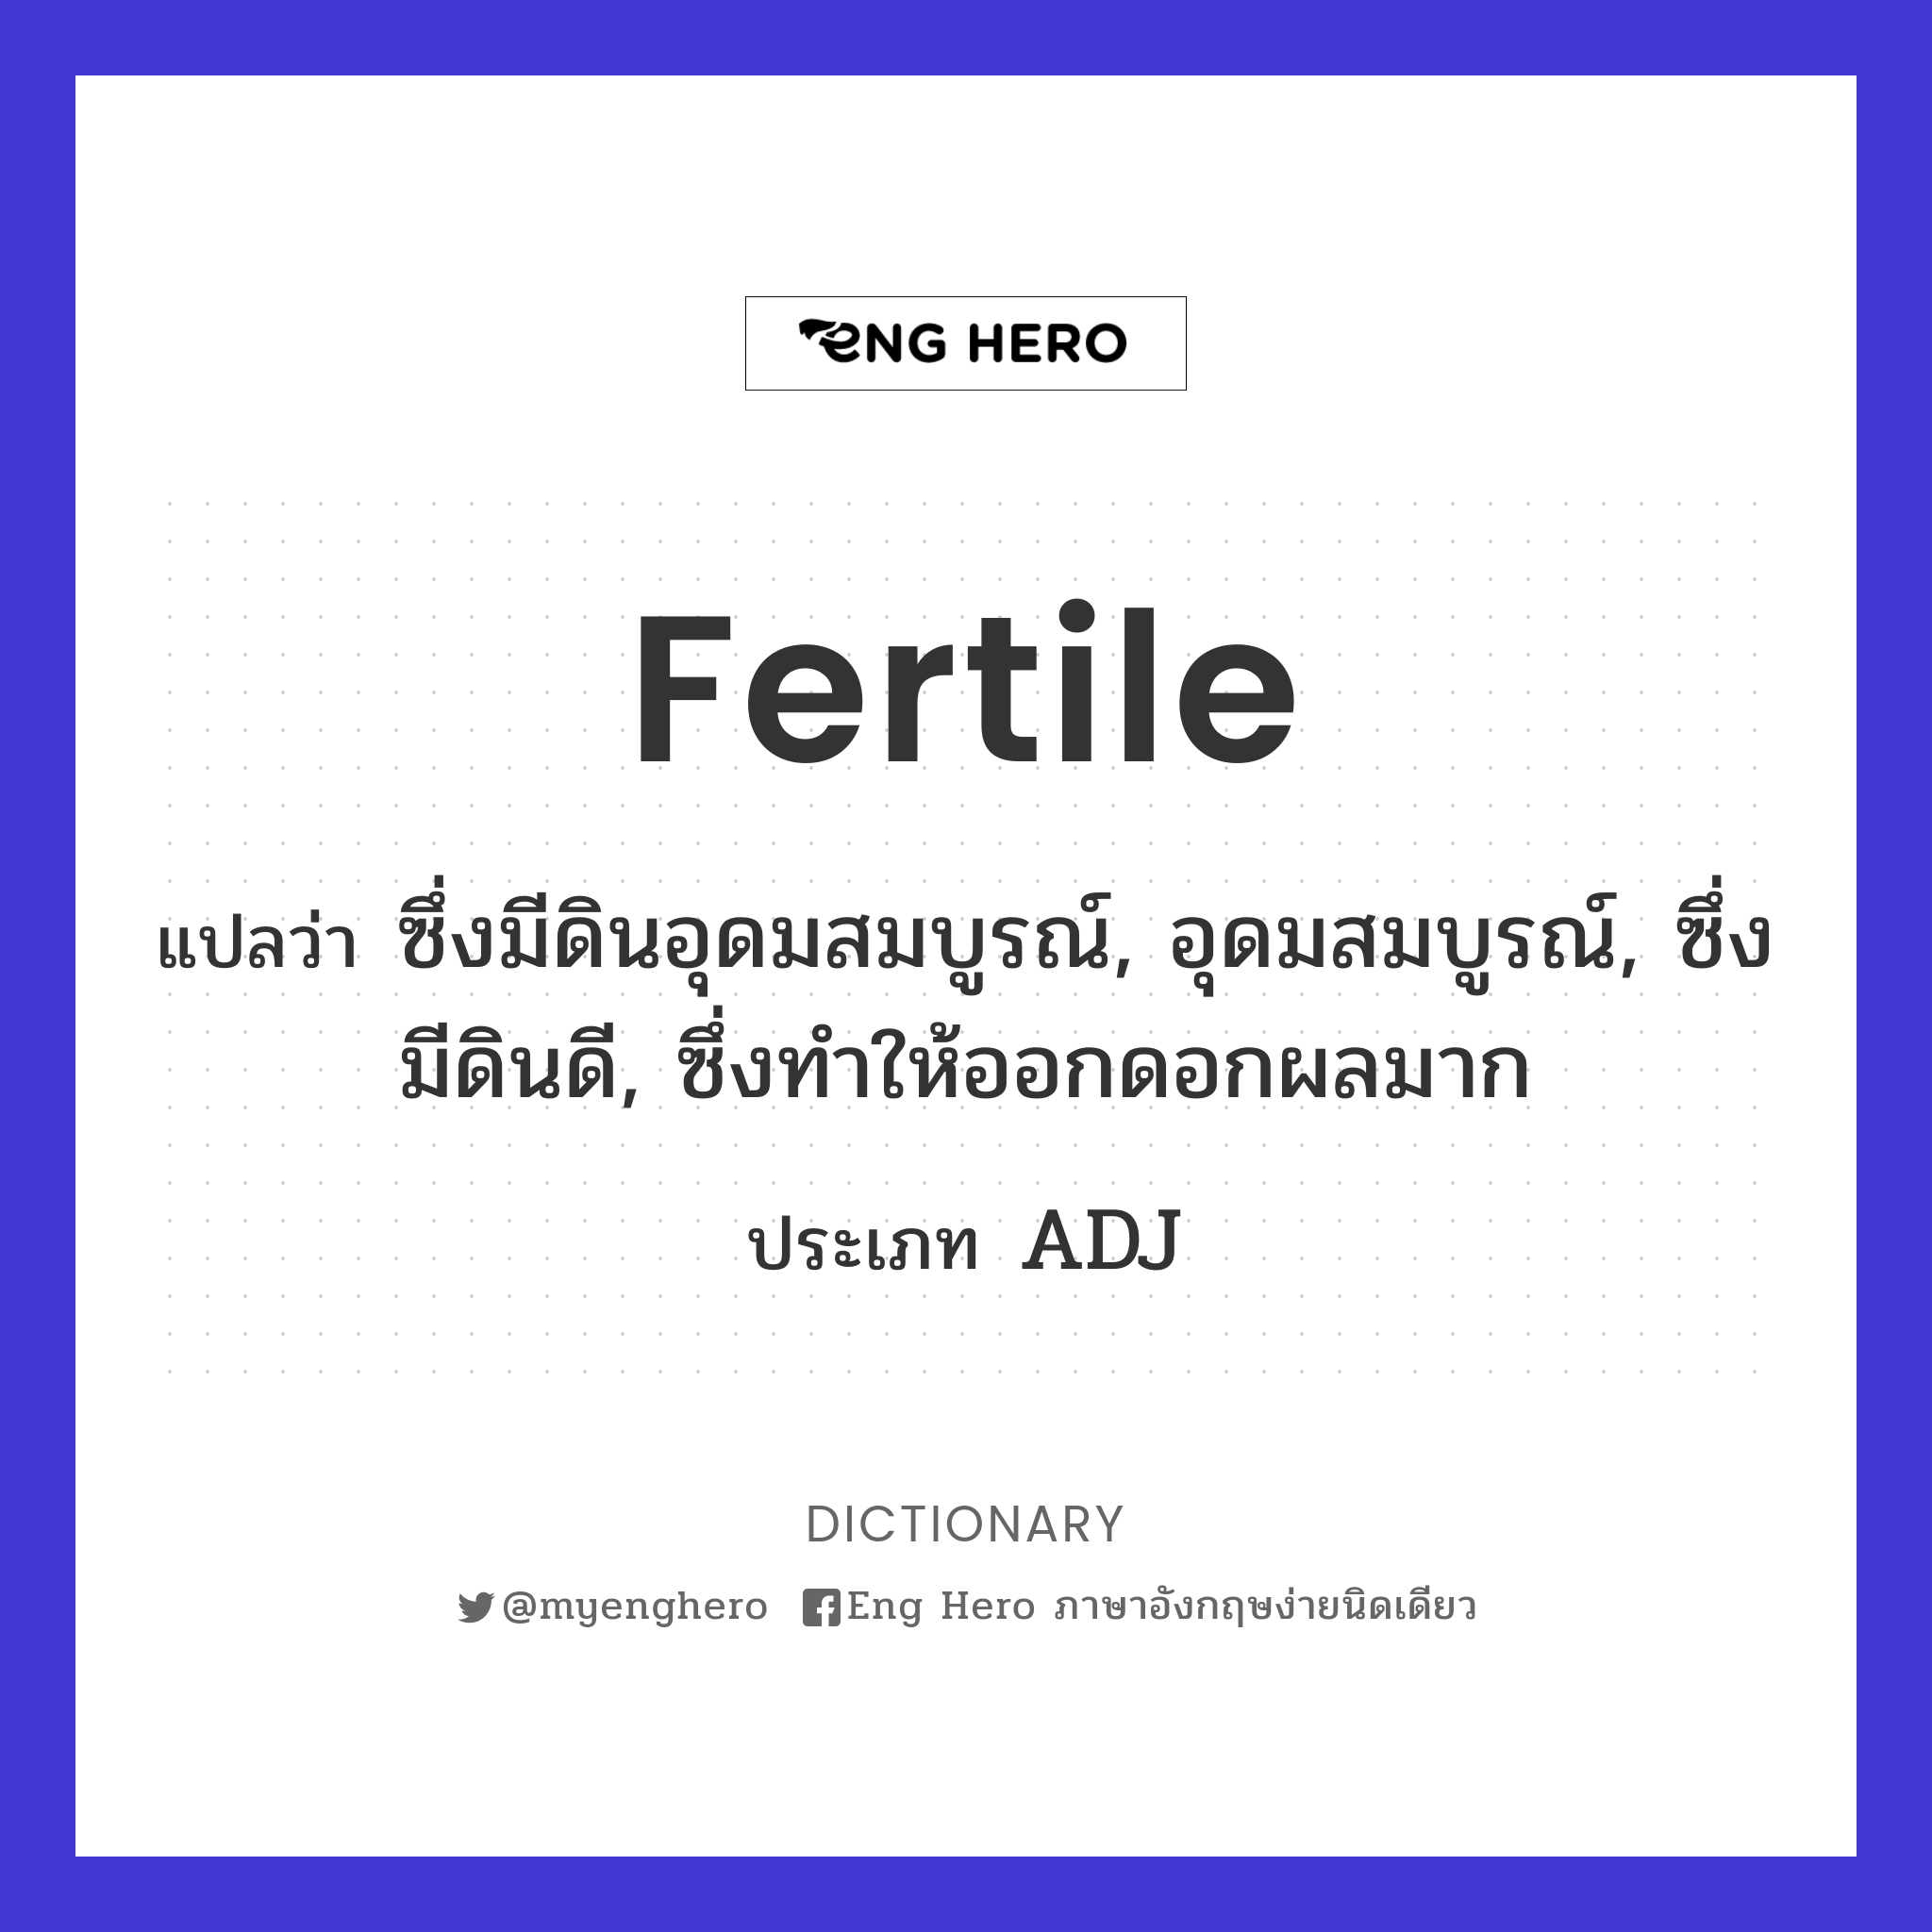 fertile